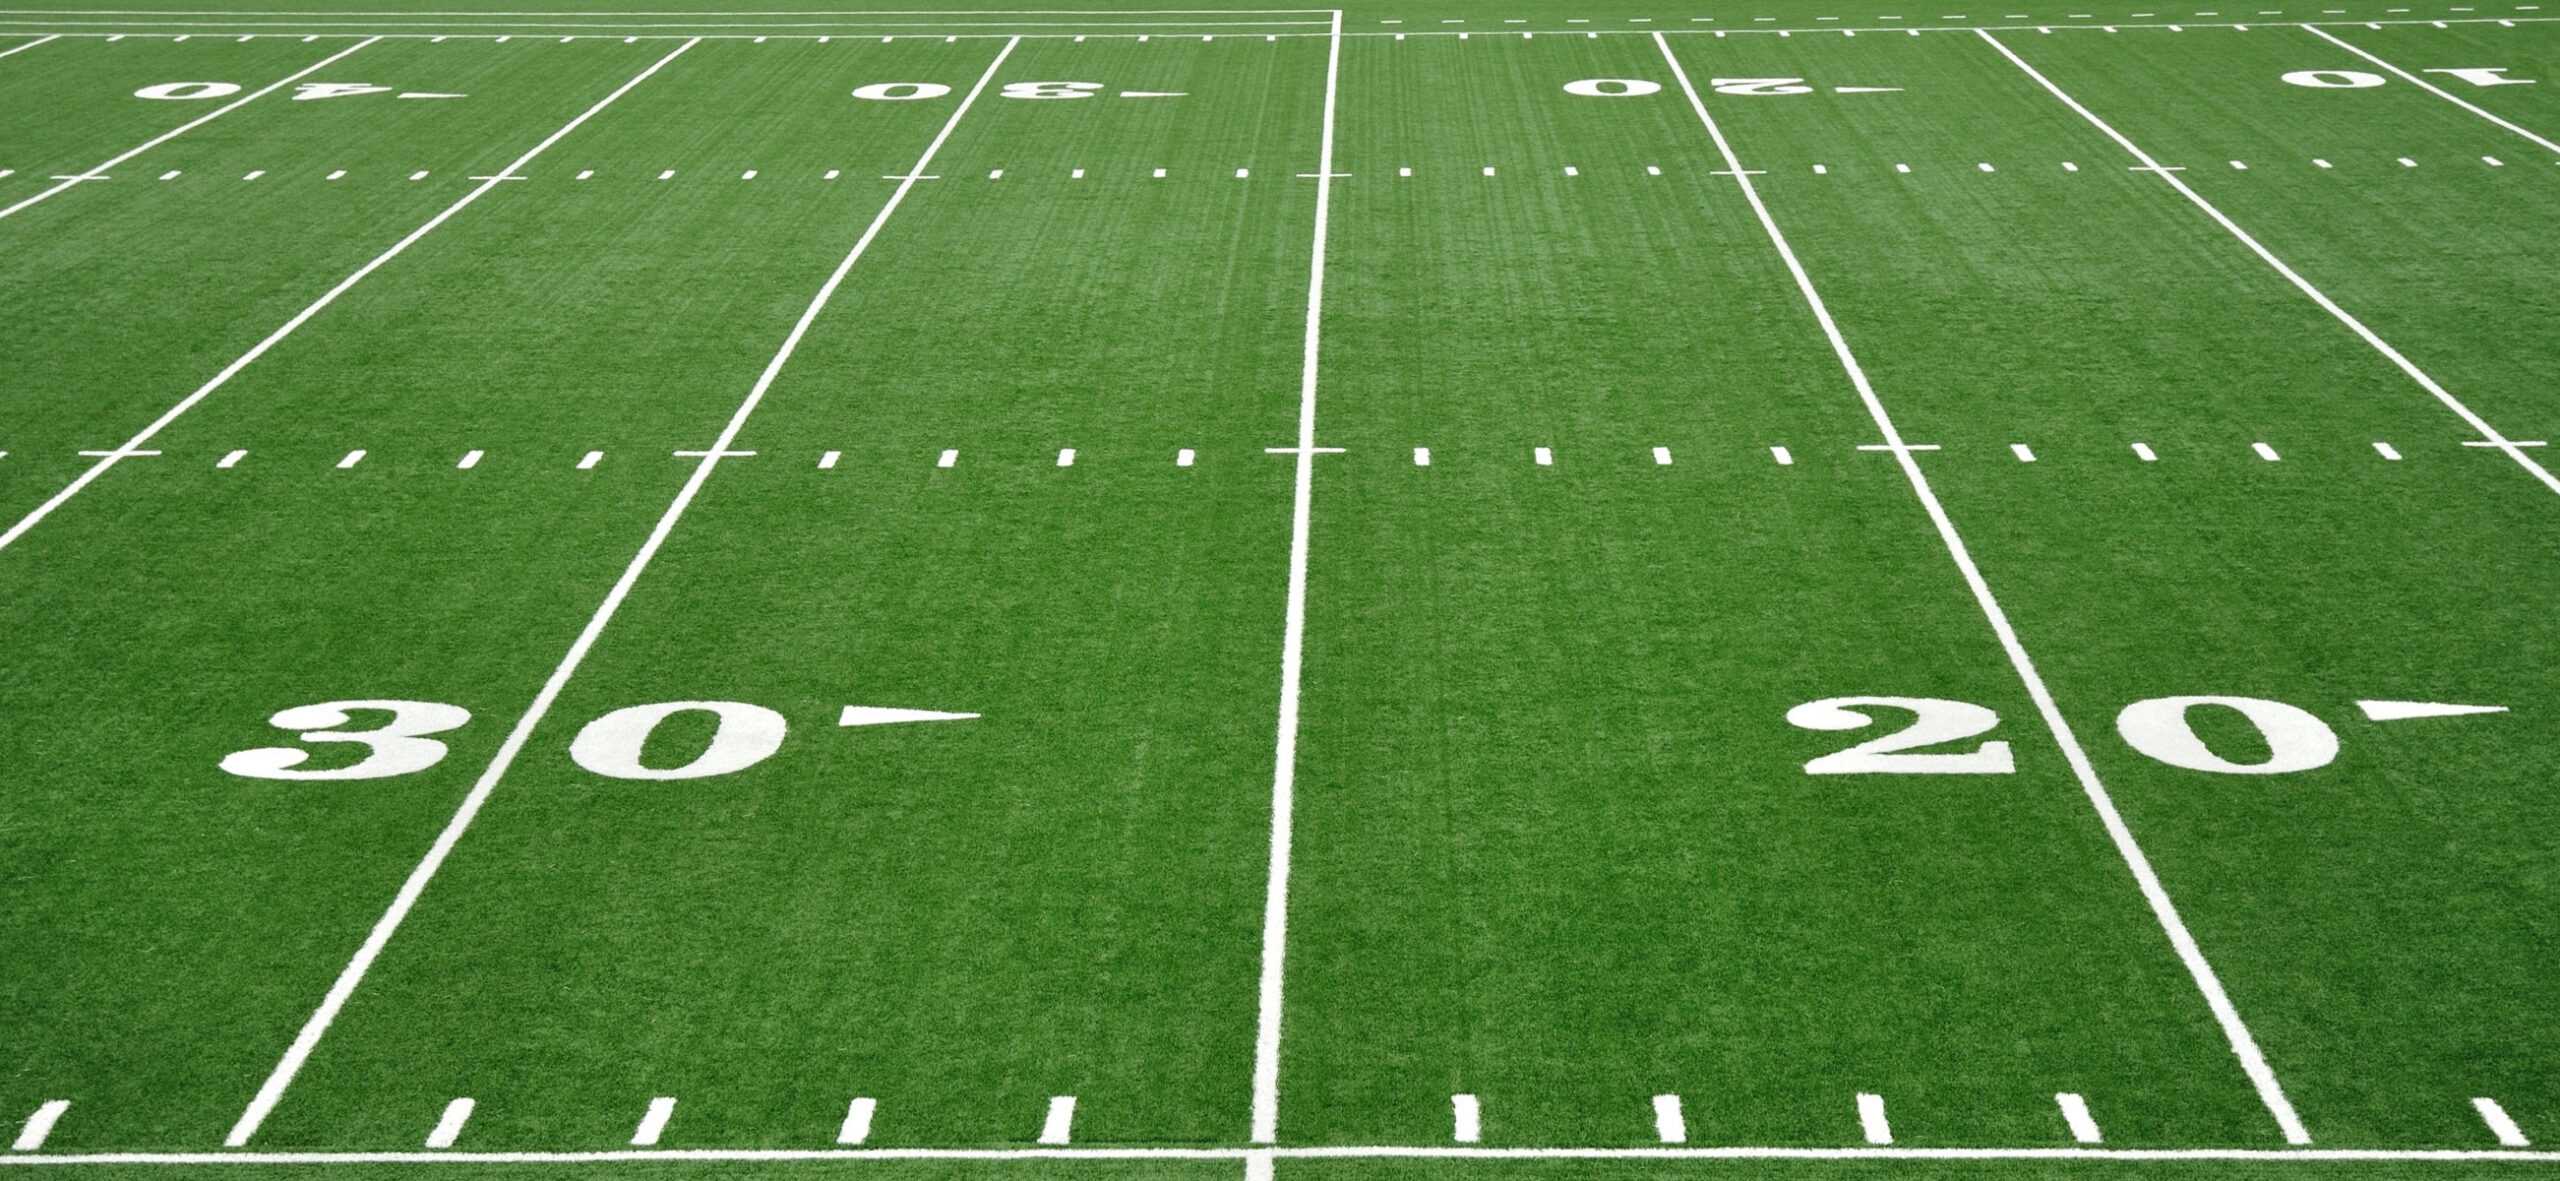 Football Field Blank Template - Imgflip In Blank Football Field Template